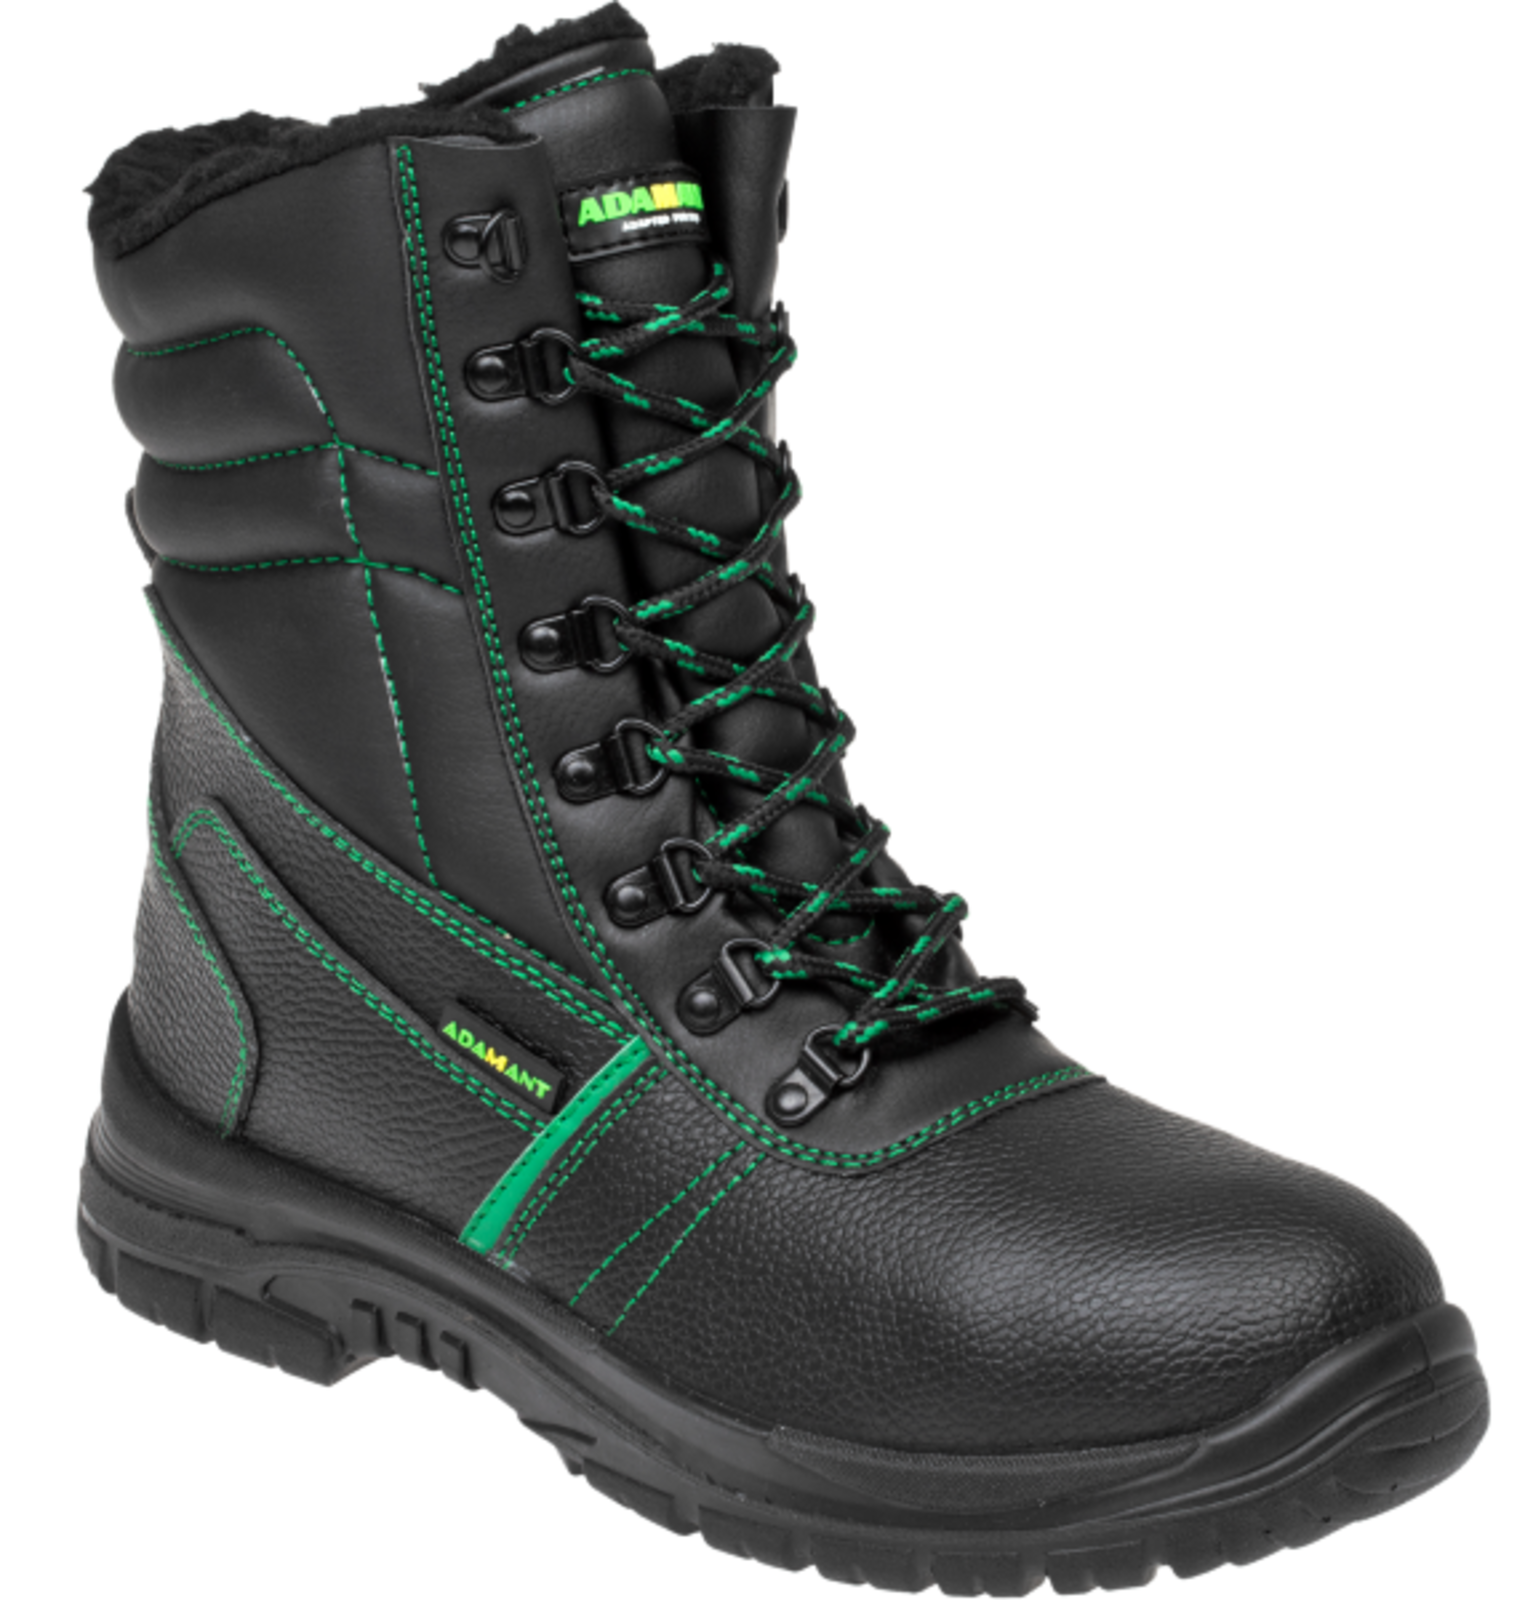 Zimná vysoká bezpečnostná obuv Adamant Classic S3 - veľkosť: 47, farba: čierna